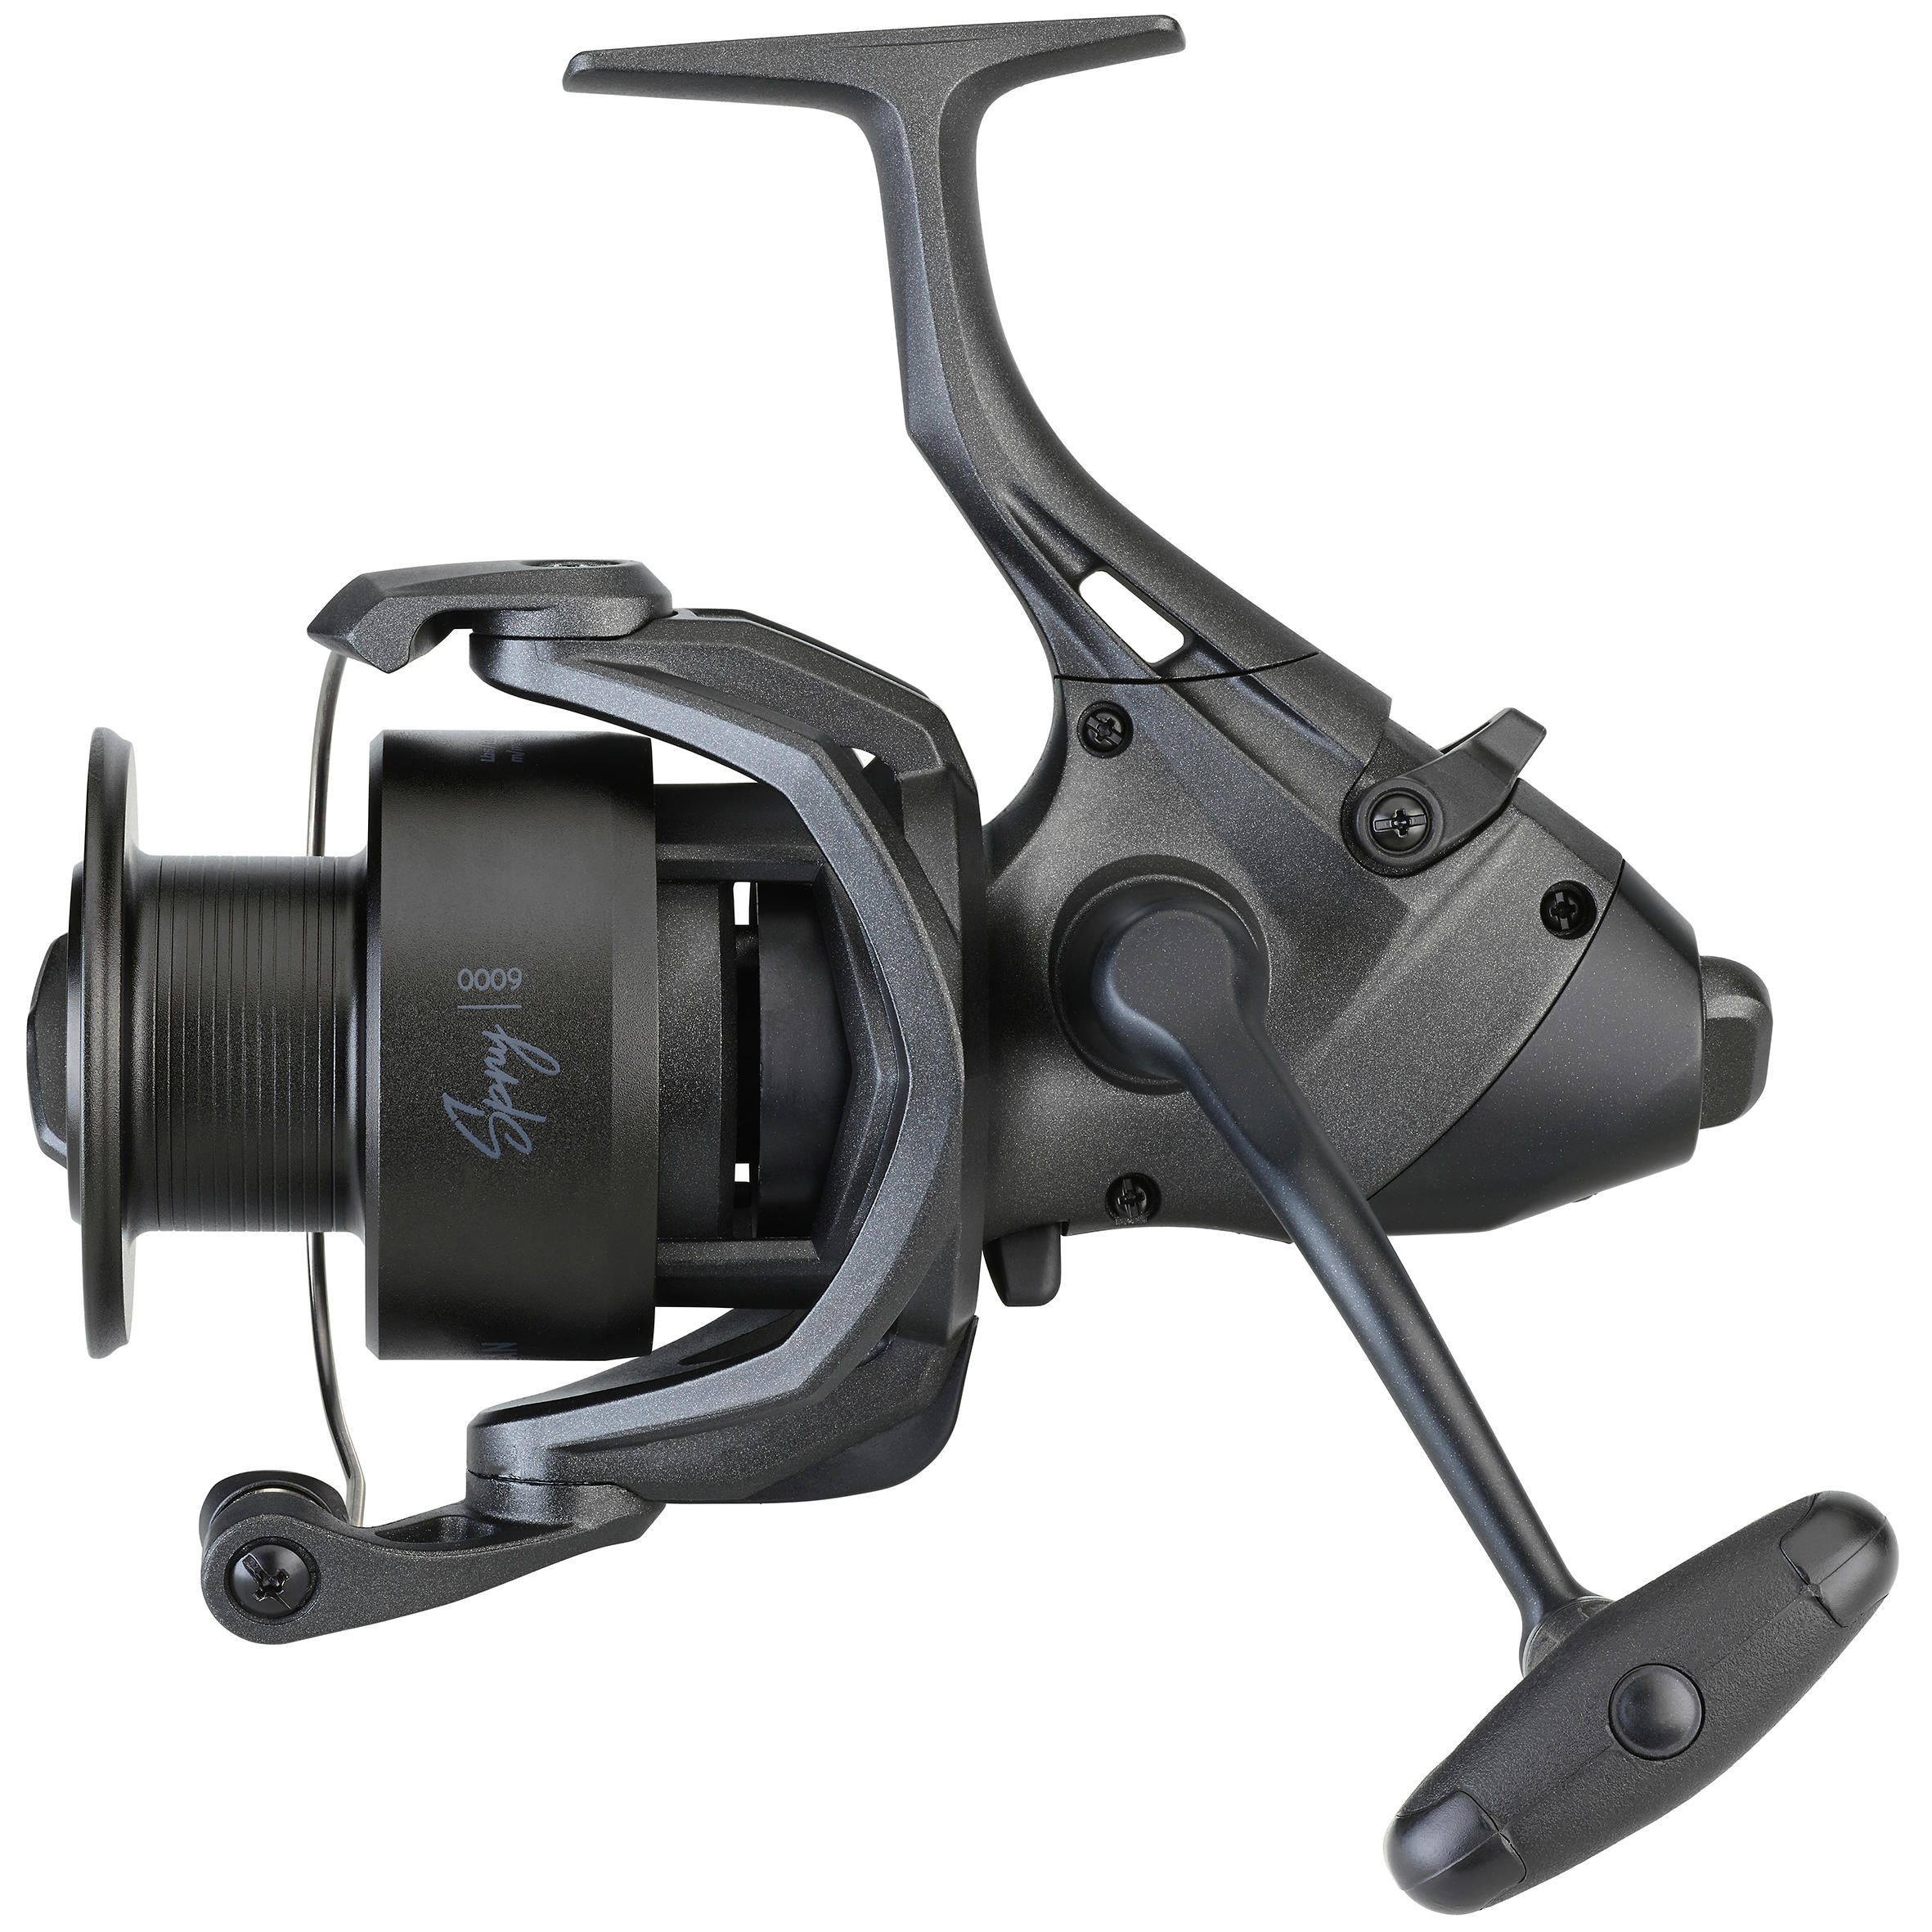 Carp Fishing Baitrunner Reel - Spry 6000 - black, Dark grey